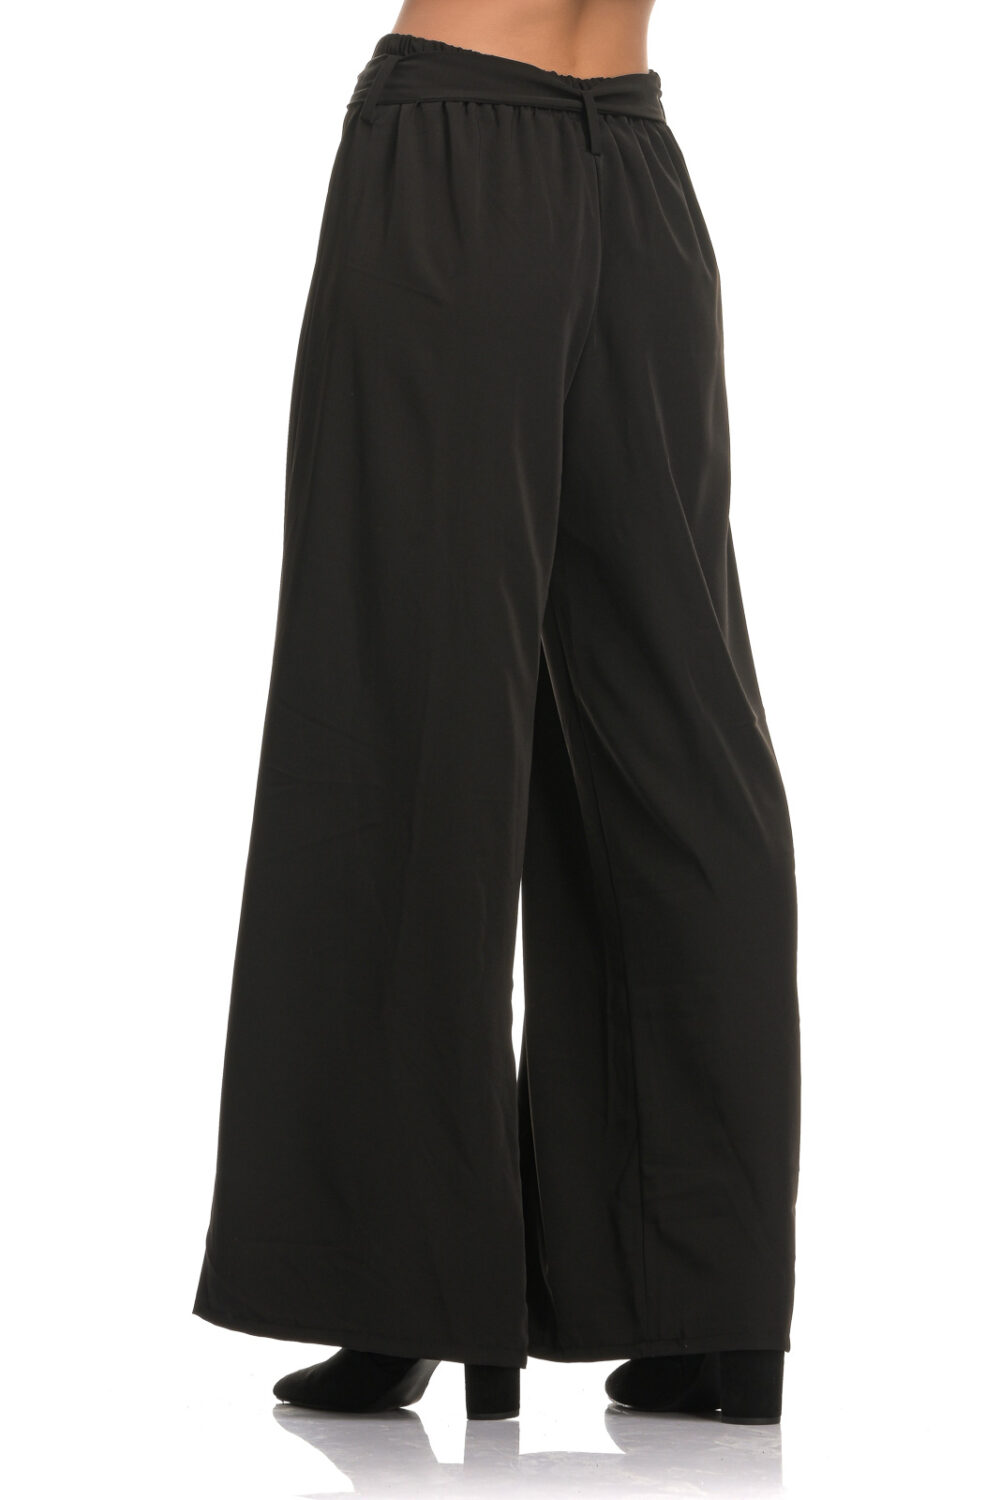 Ψηλόμεση παντελόνα με ζώνη σε μαύρο χρώμα